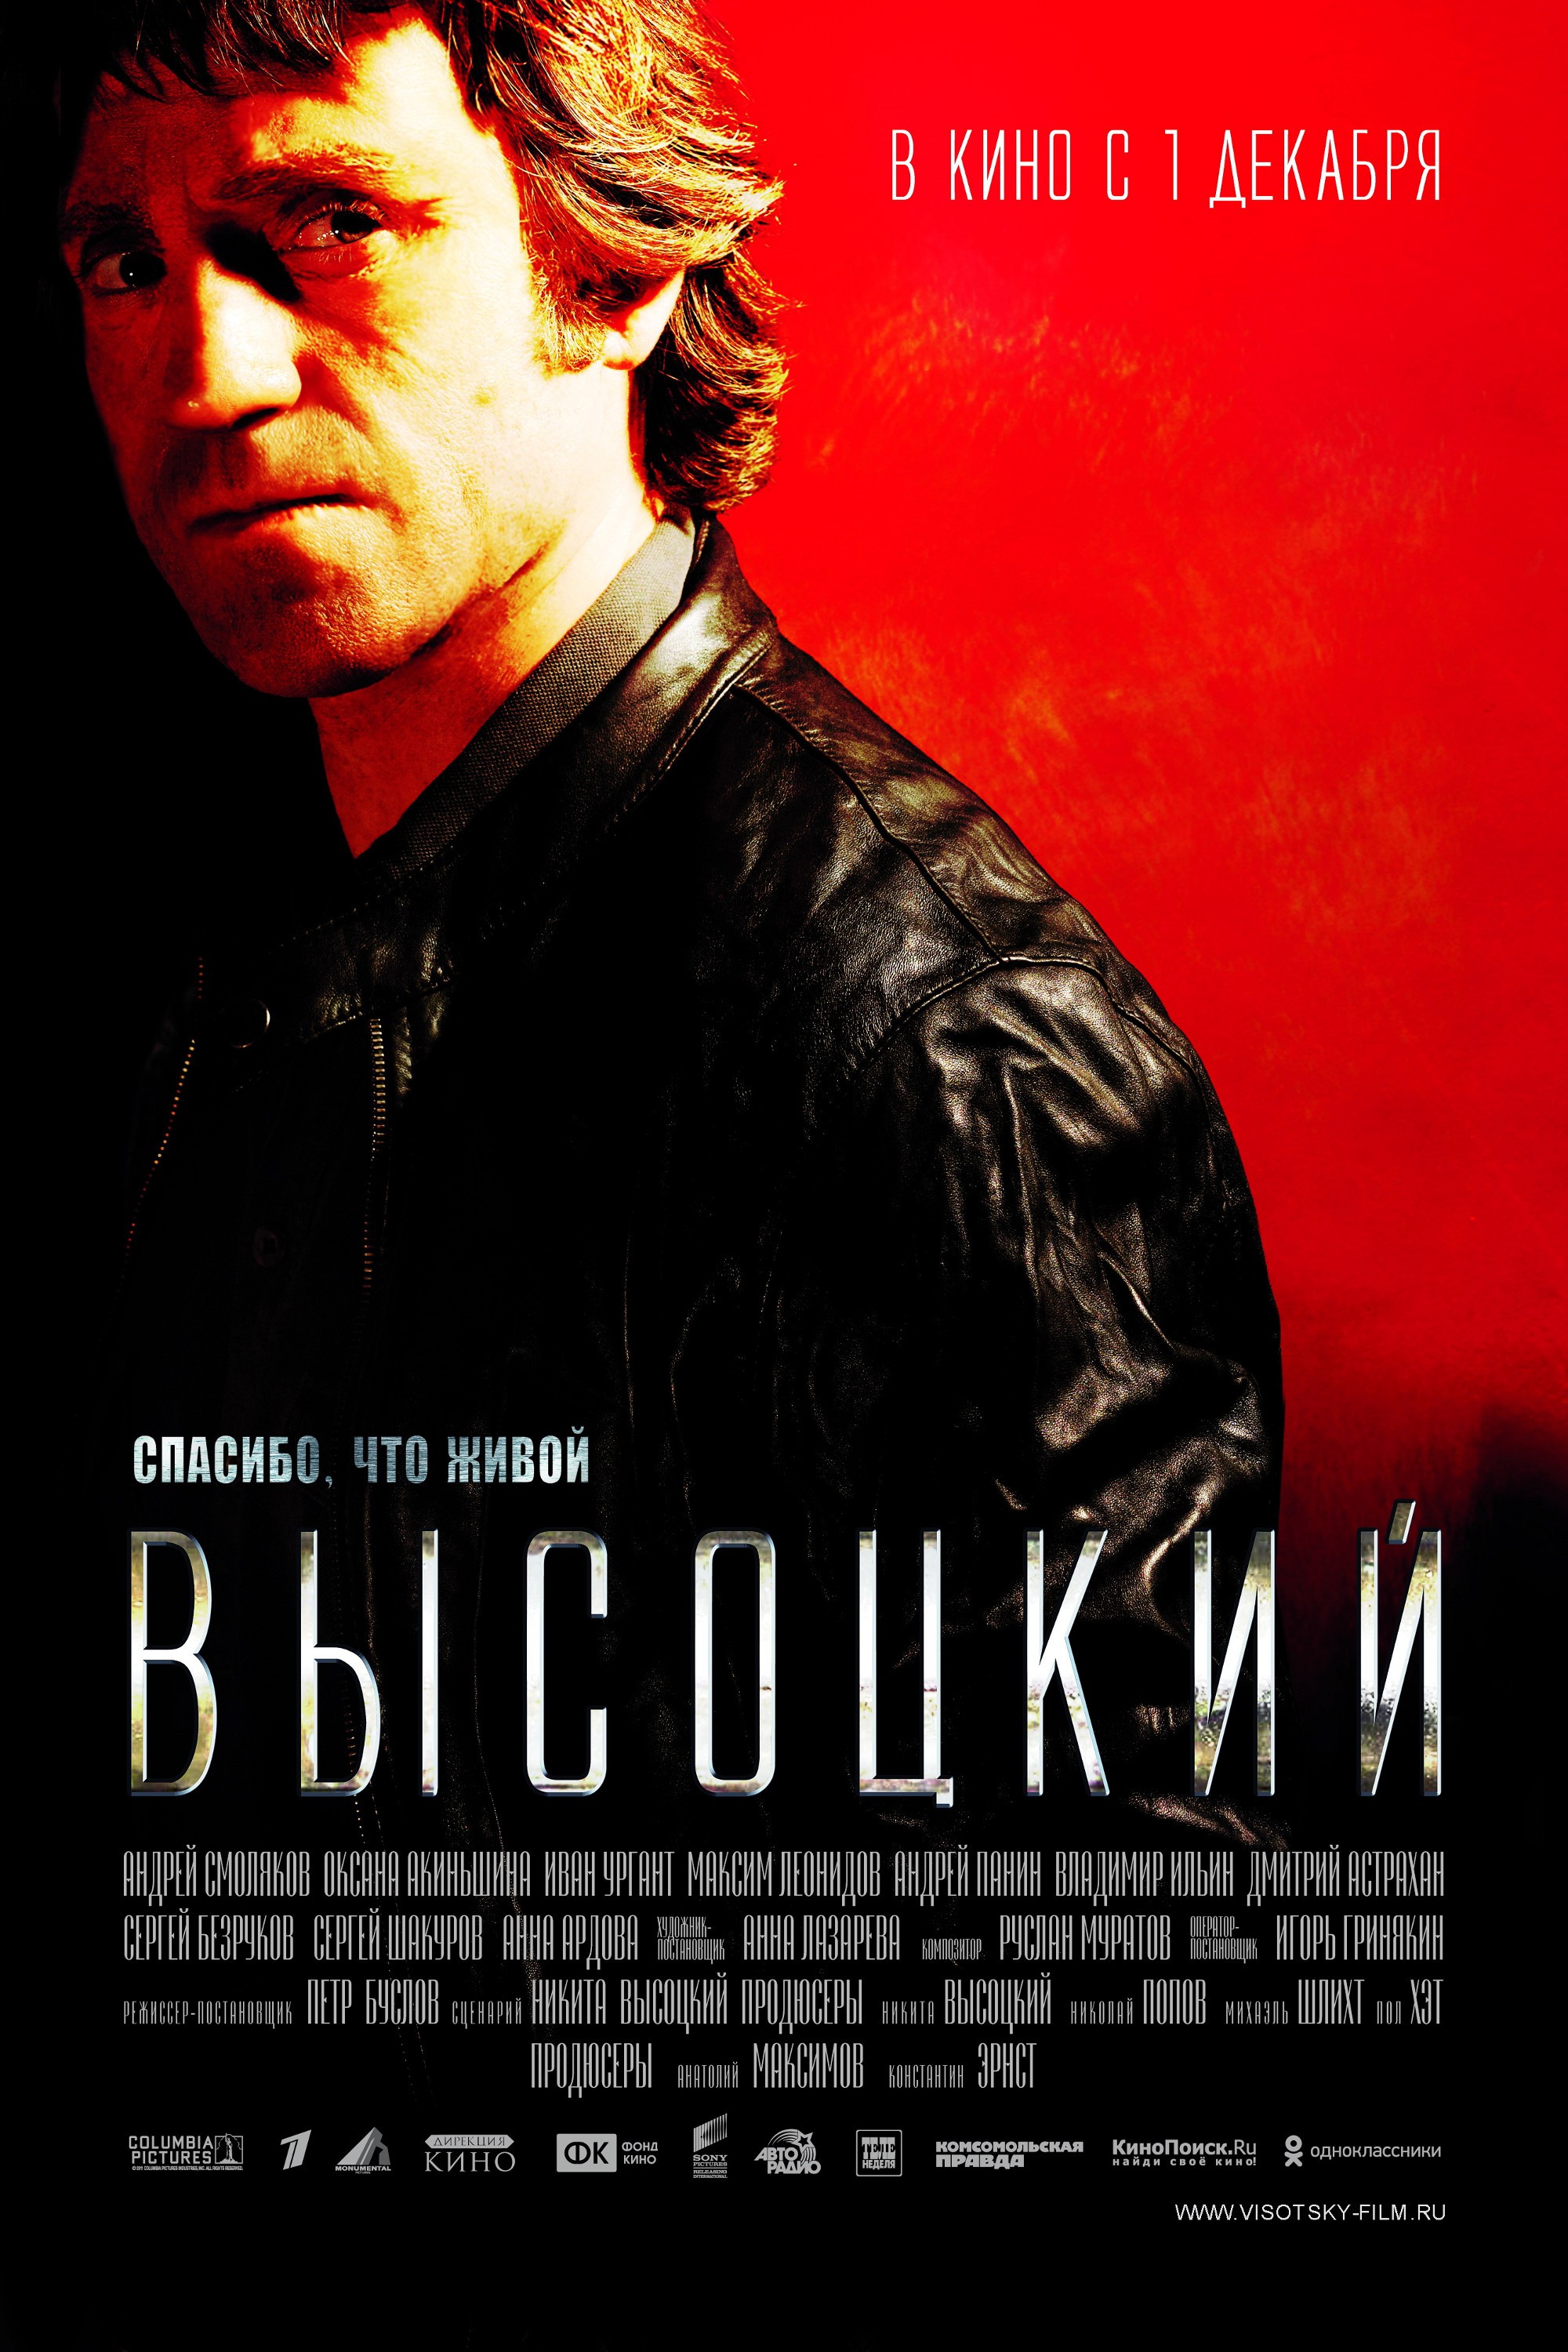 Mega Sized Movie Poster Image for Vysotsky: Thank God I'm Alive 